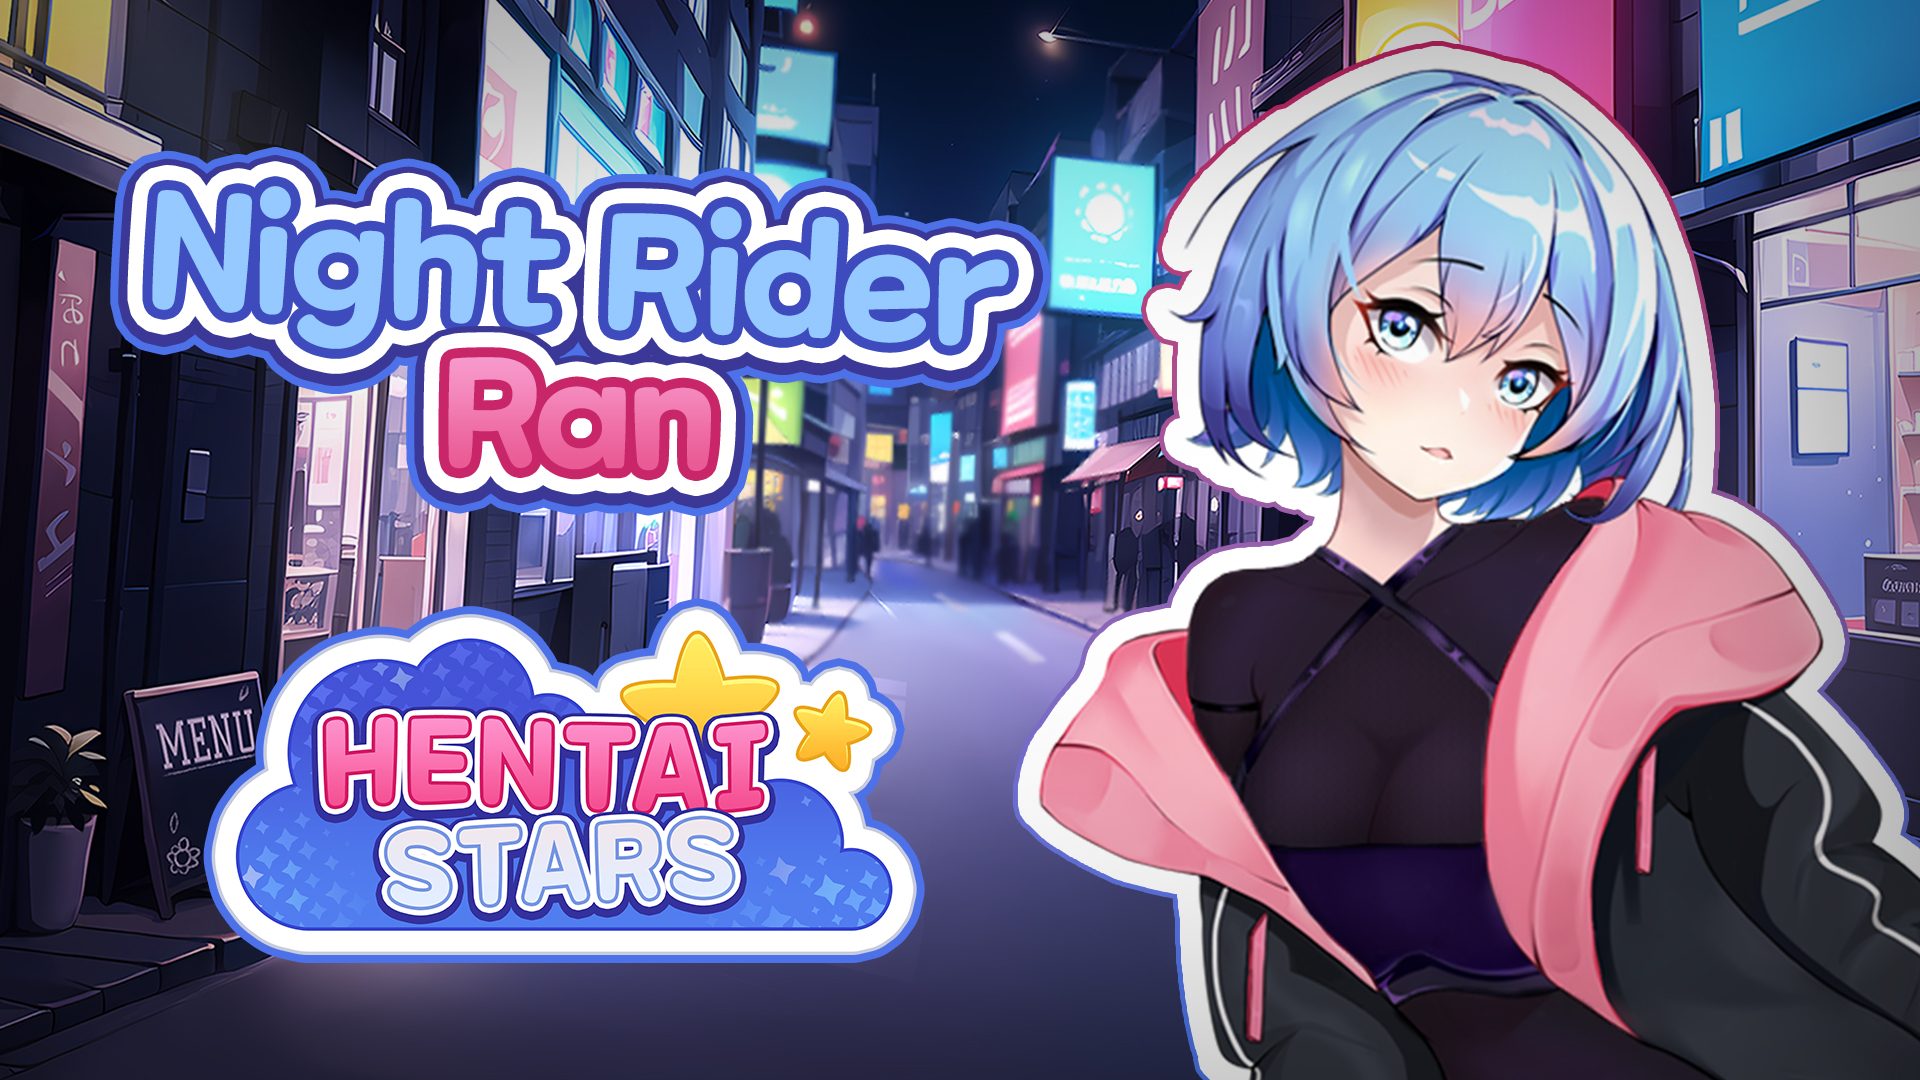 Night Rider Ran